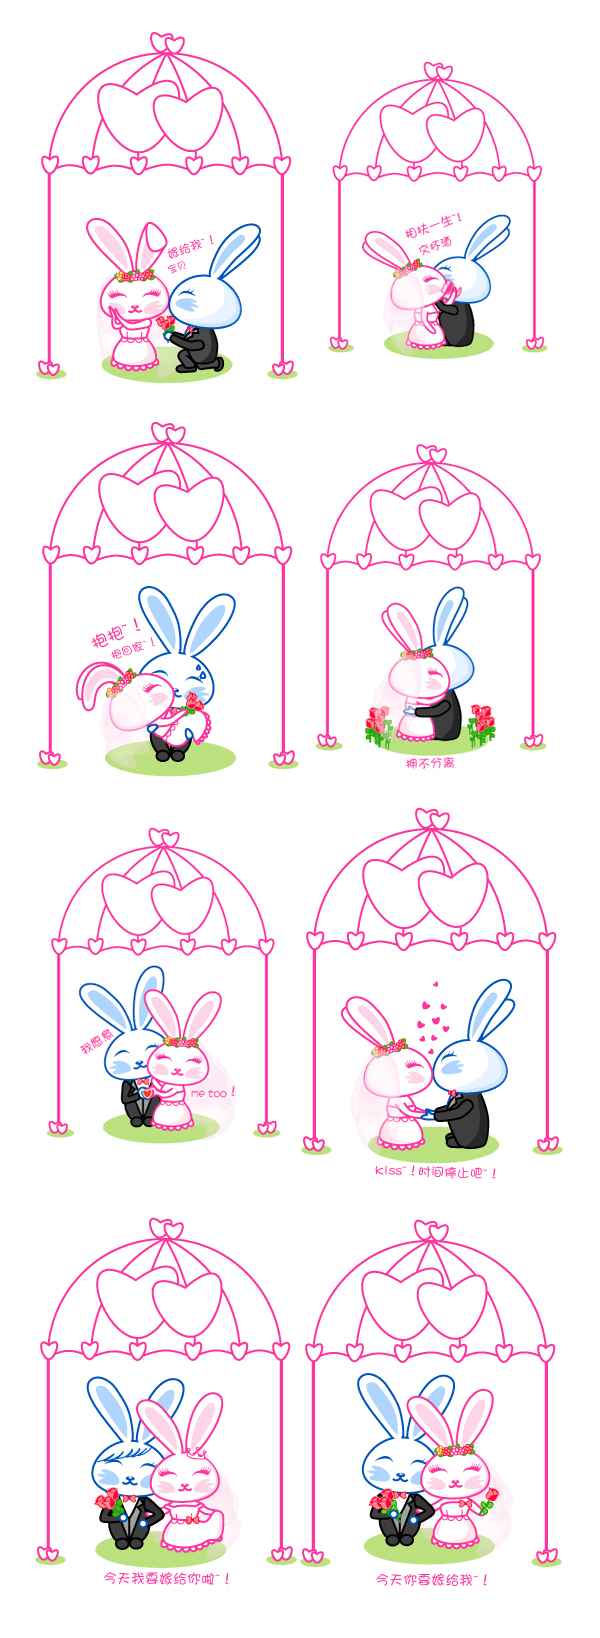 Happyhappy Rabbit Icon Wedding Articles